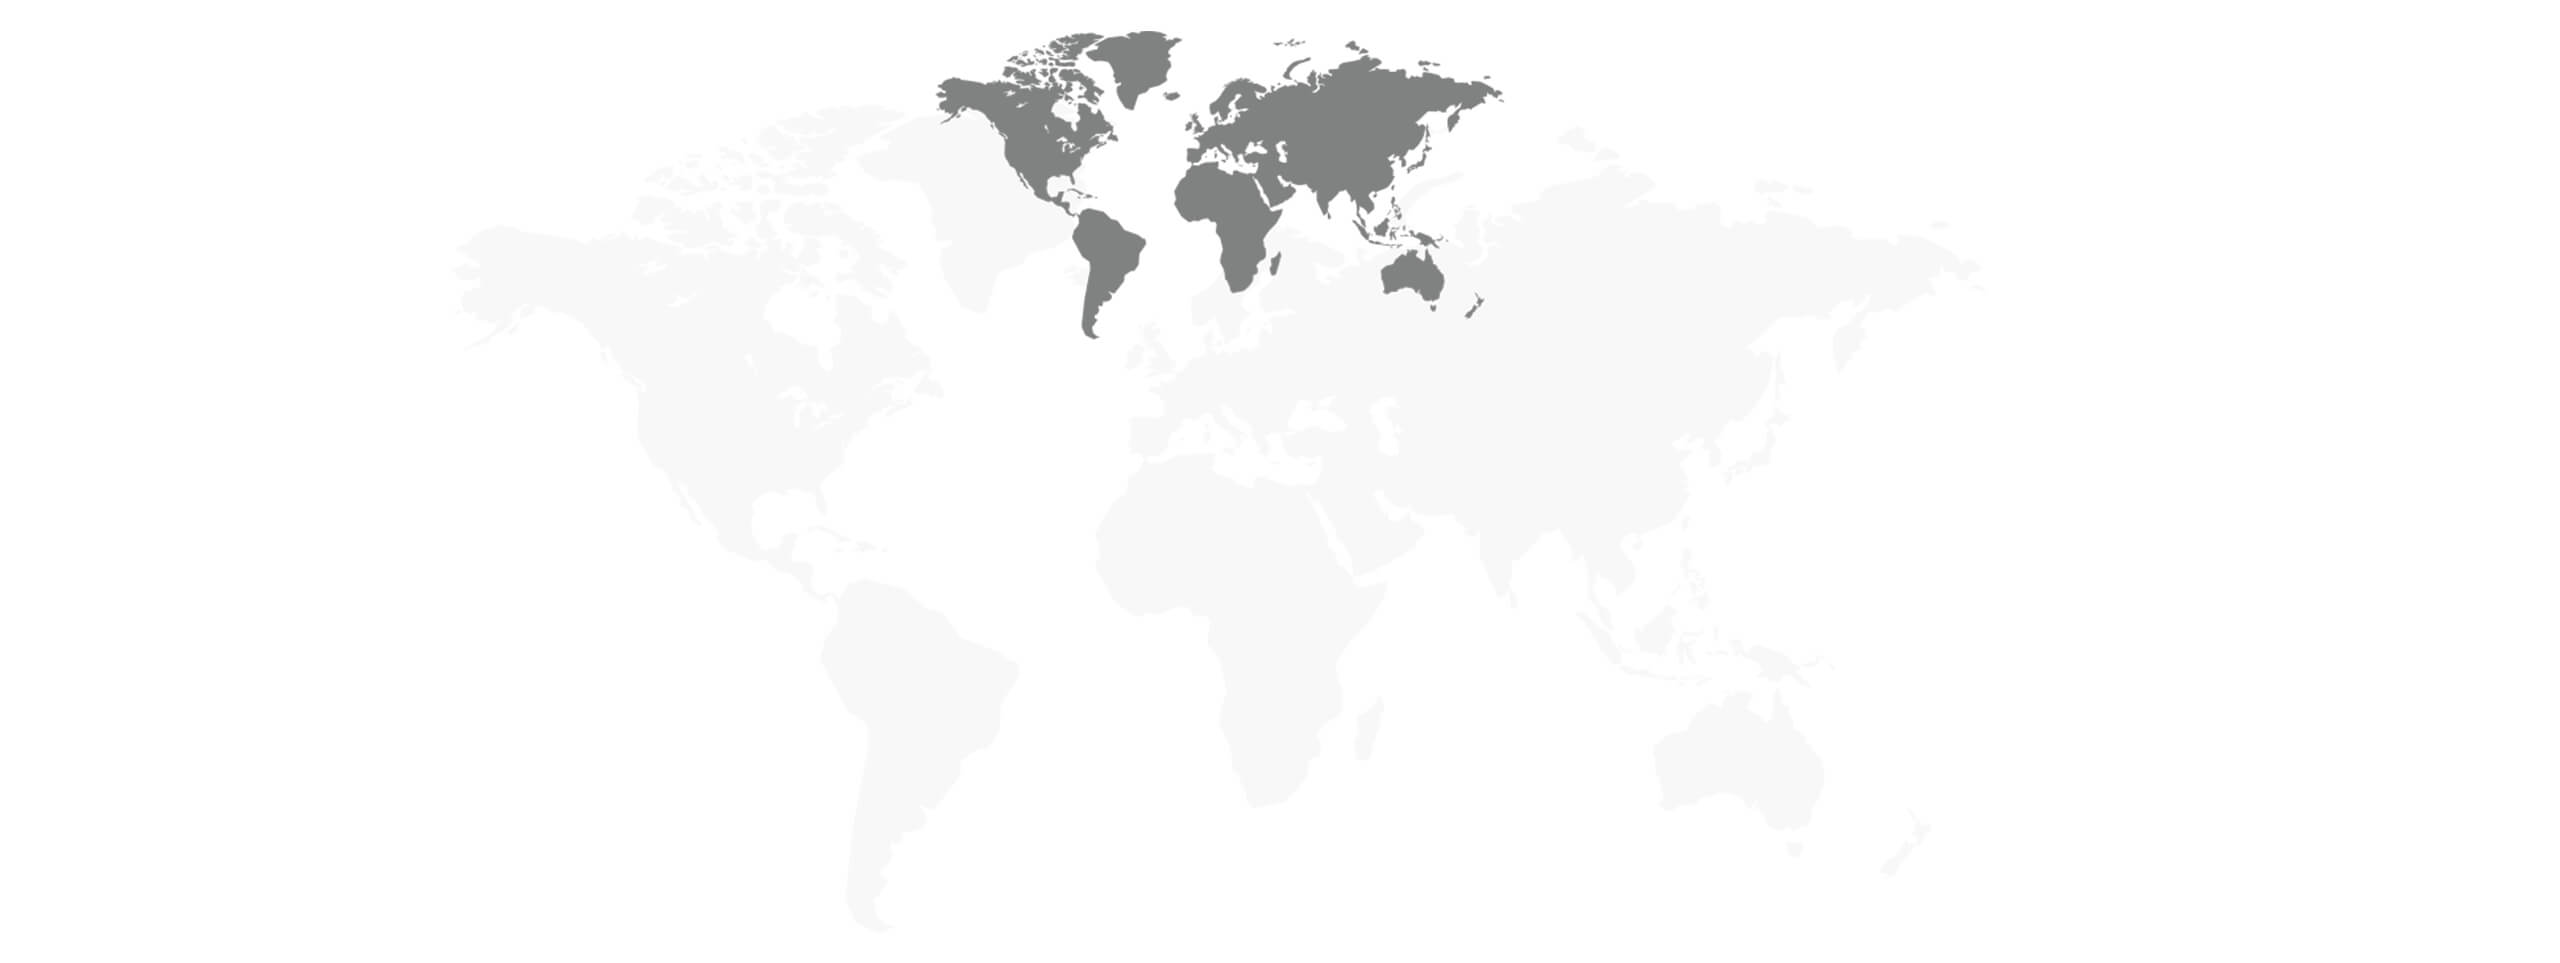 besmarter_facts_world_map_2560x963